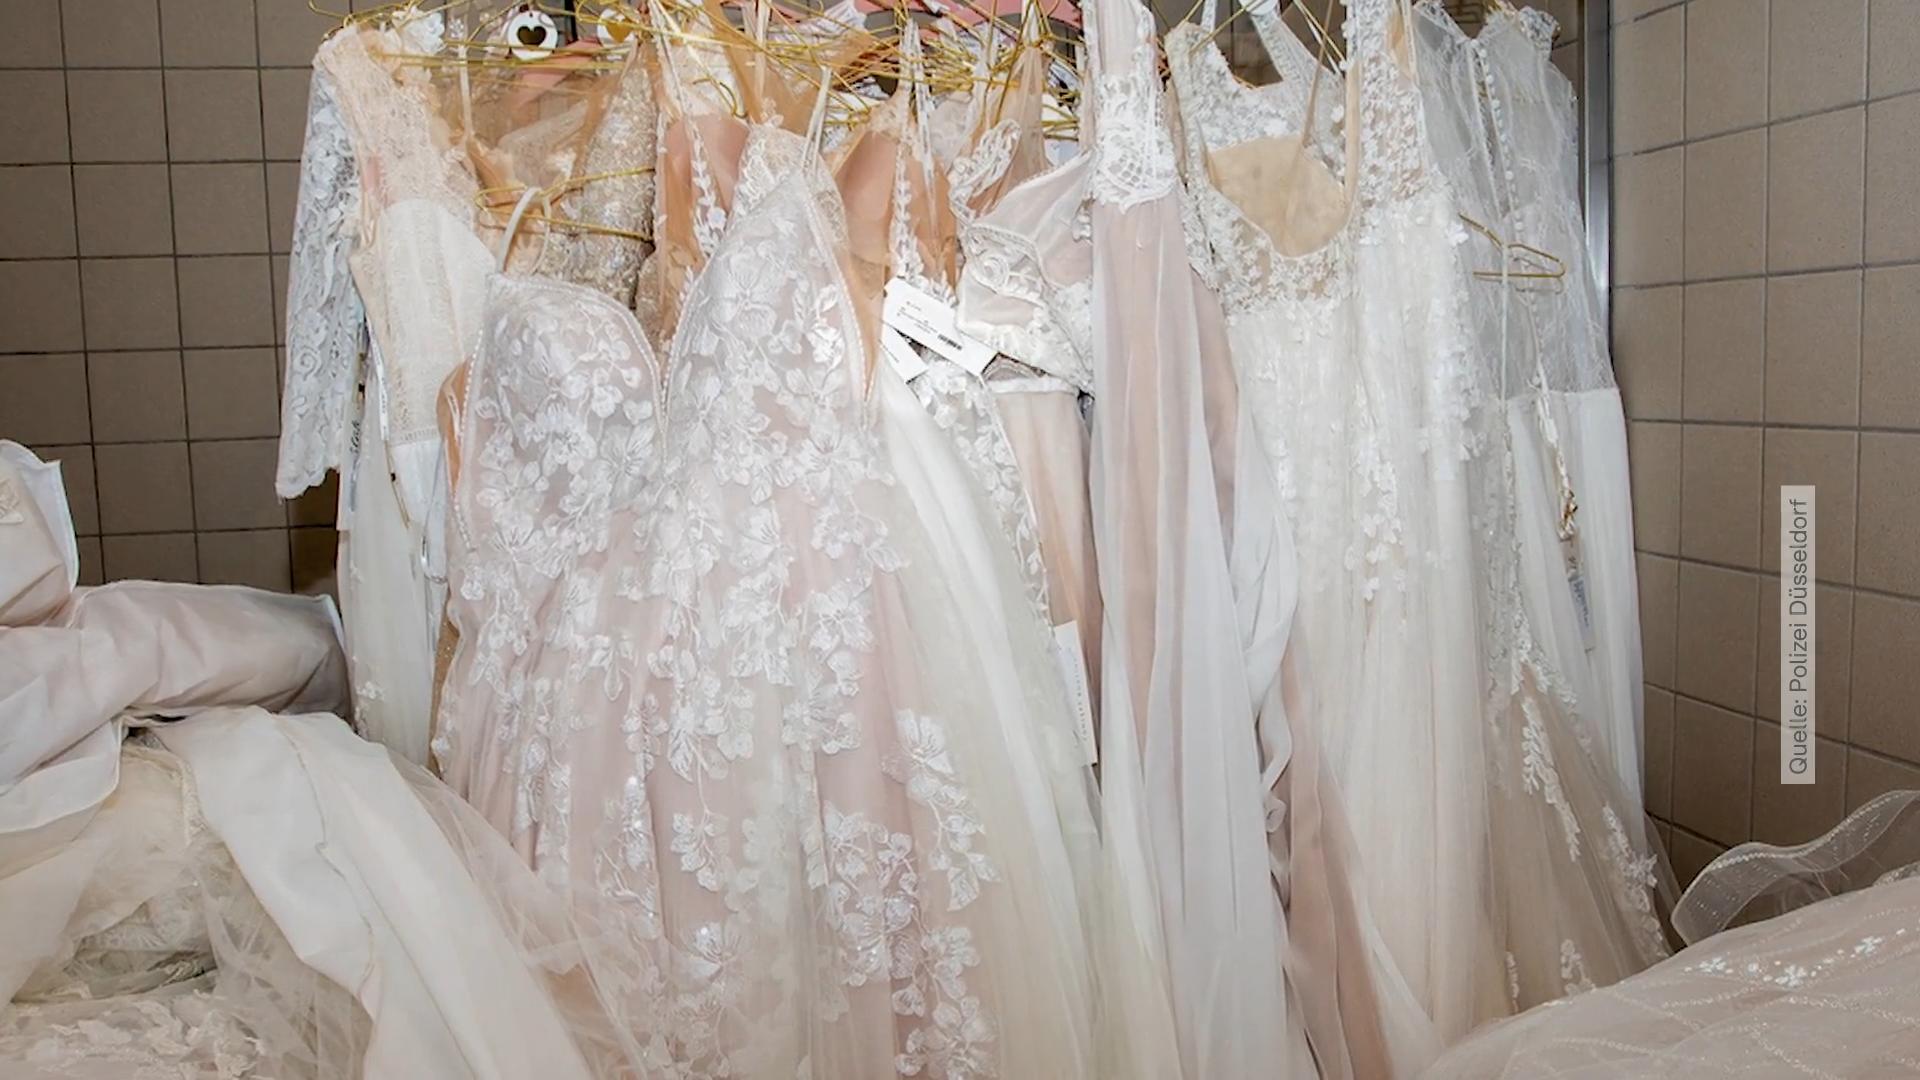 Düsseldorf: 400 Brautkleider gestohlen Zahlreiche Hochzeiten wurden versaut